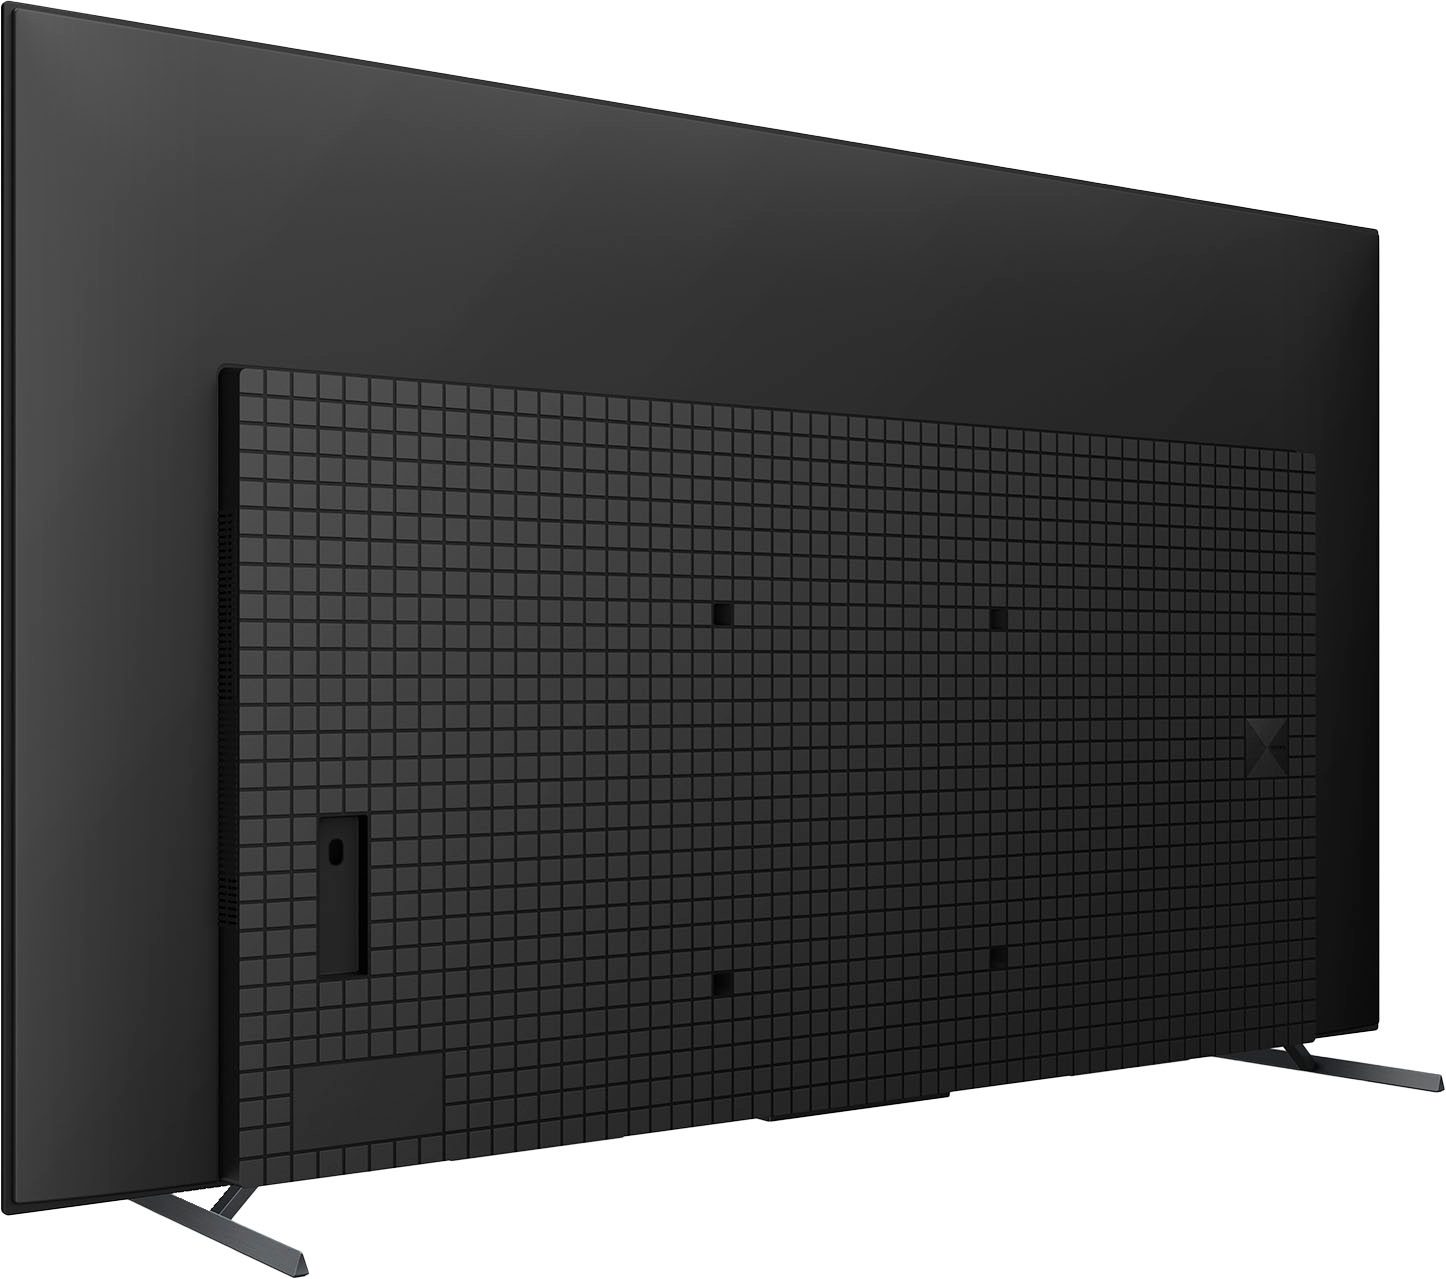 Sony Televisor OLED BRAVIA XR A80L Series 4K Ultra HD de 55 pulgadas: Smart  Google TV con Dolby Vision HDR y funciones exclusivas de juego para el